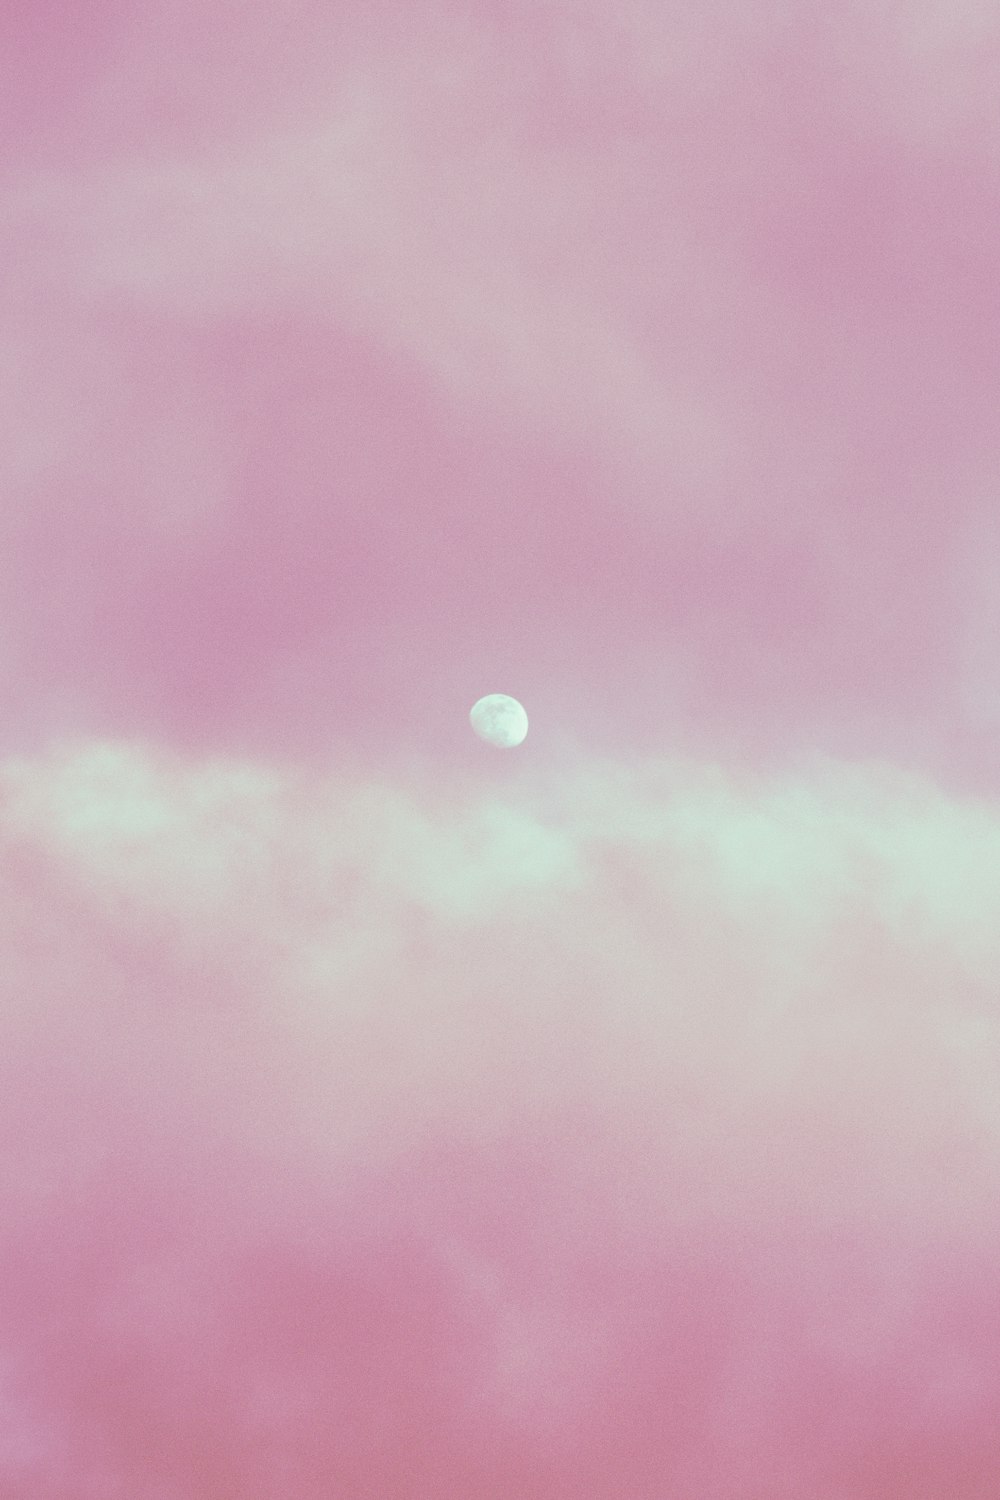 달이 있는 분홍색과 푸른 하늘